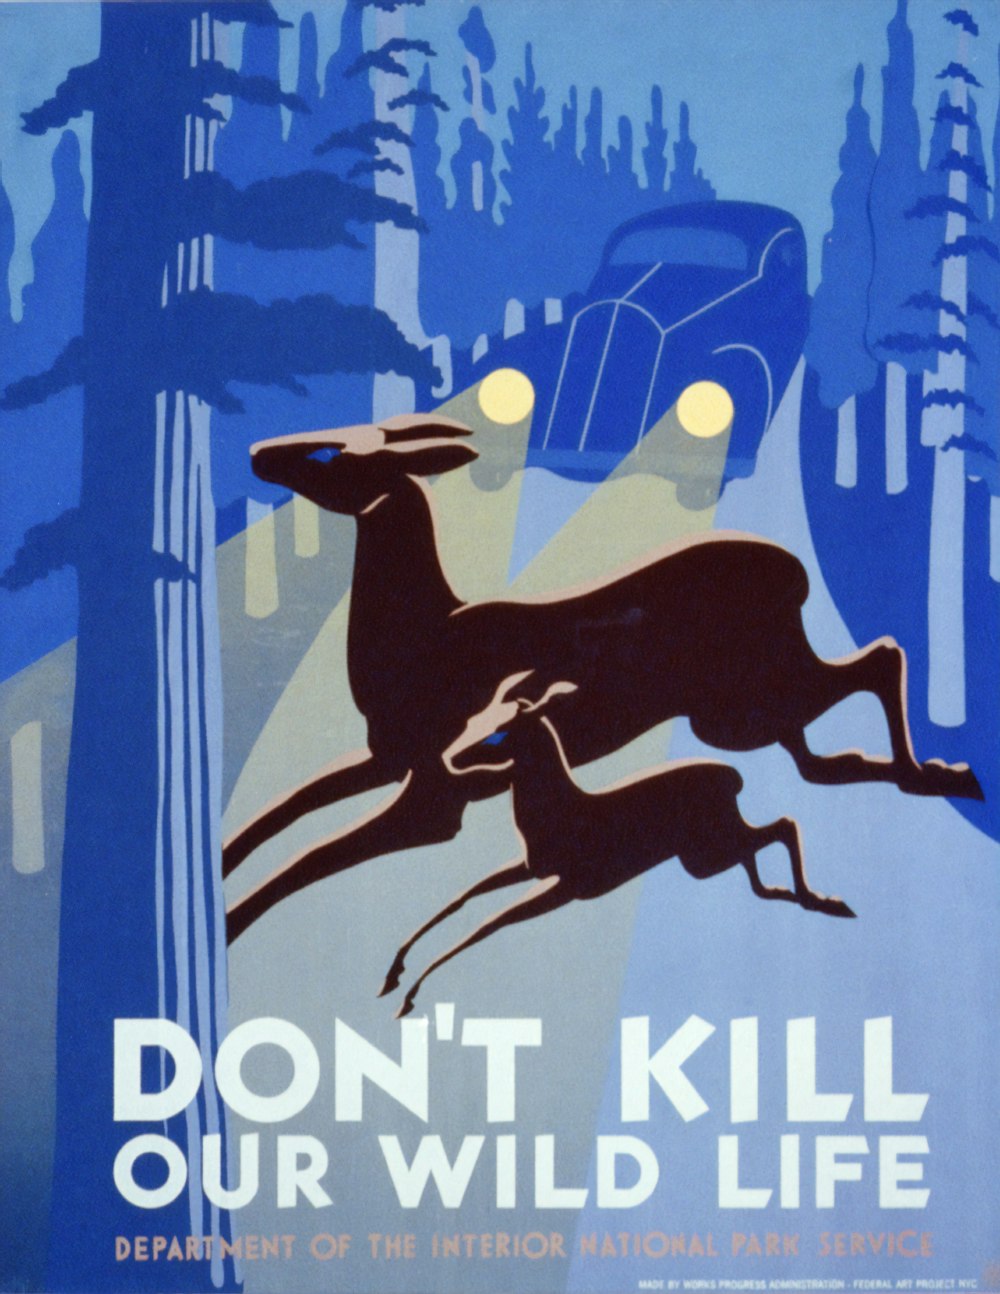 Non uccidere la nostra vita selvaggia. Poster WPA.